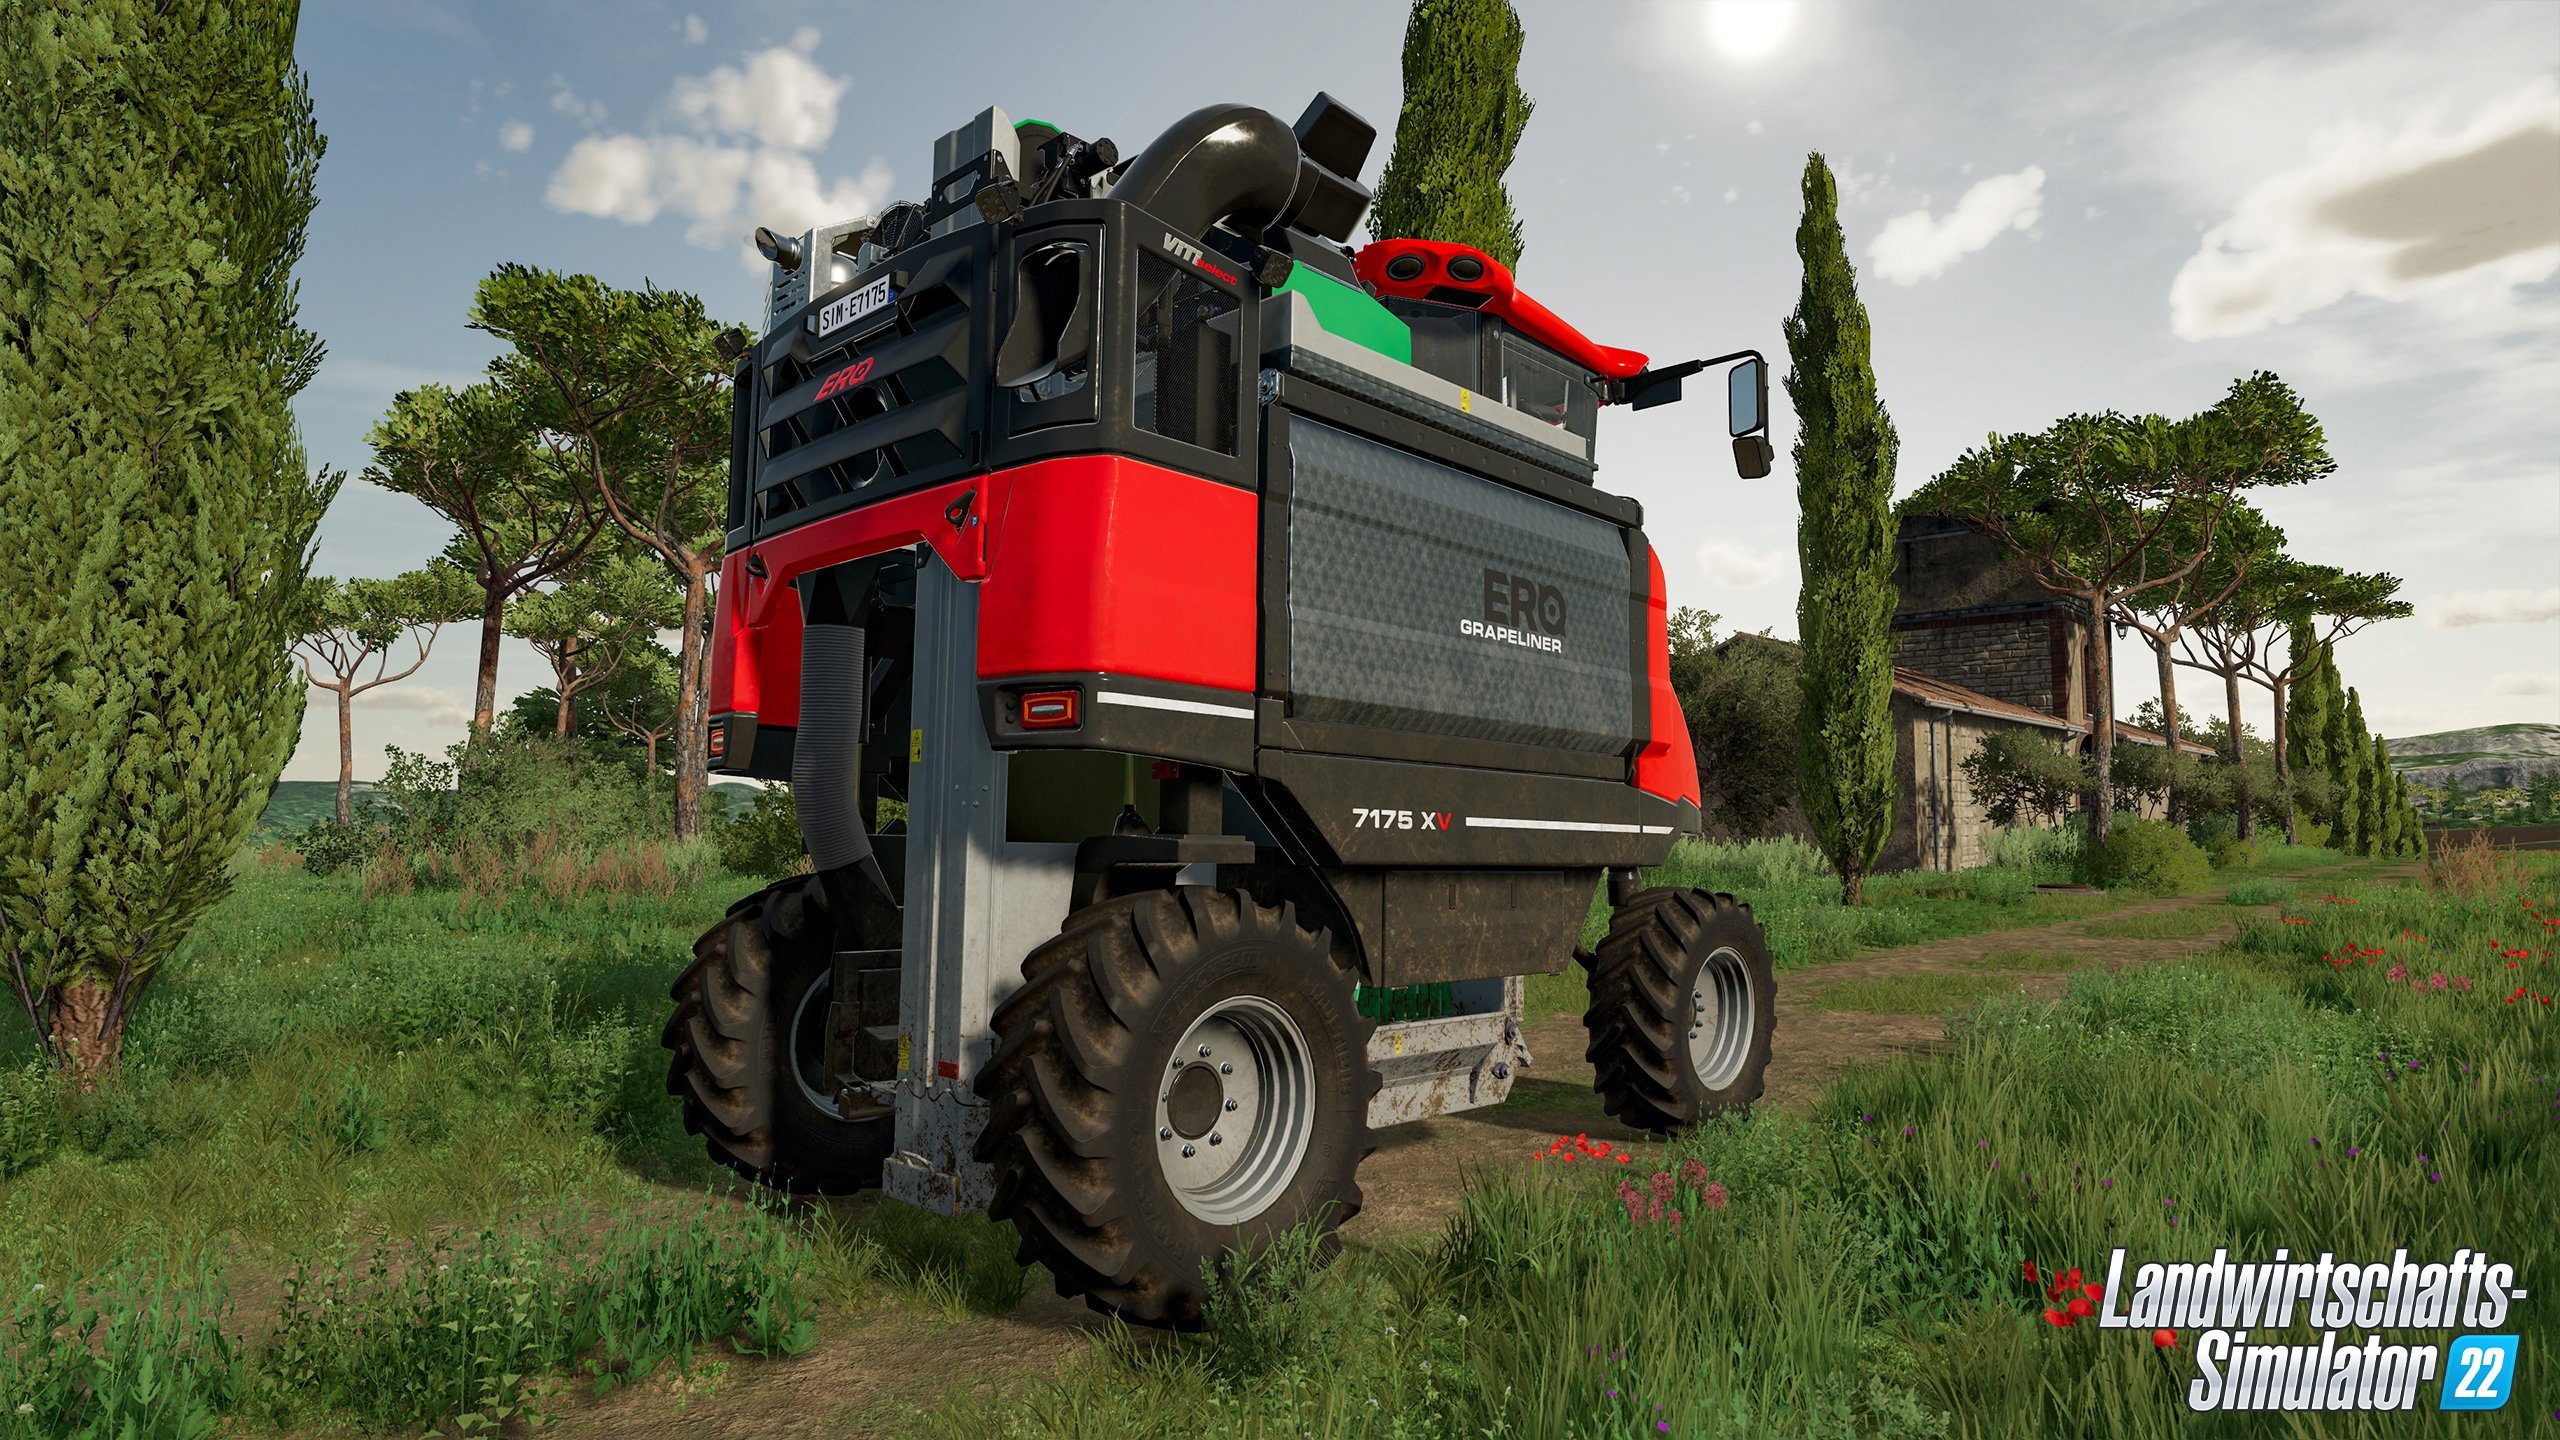 Rundumleuchte Landwirtschafts-Simulator PC 22